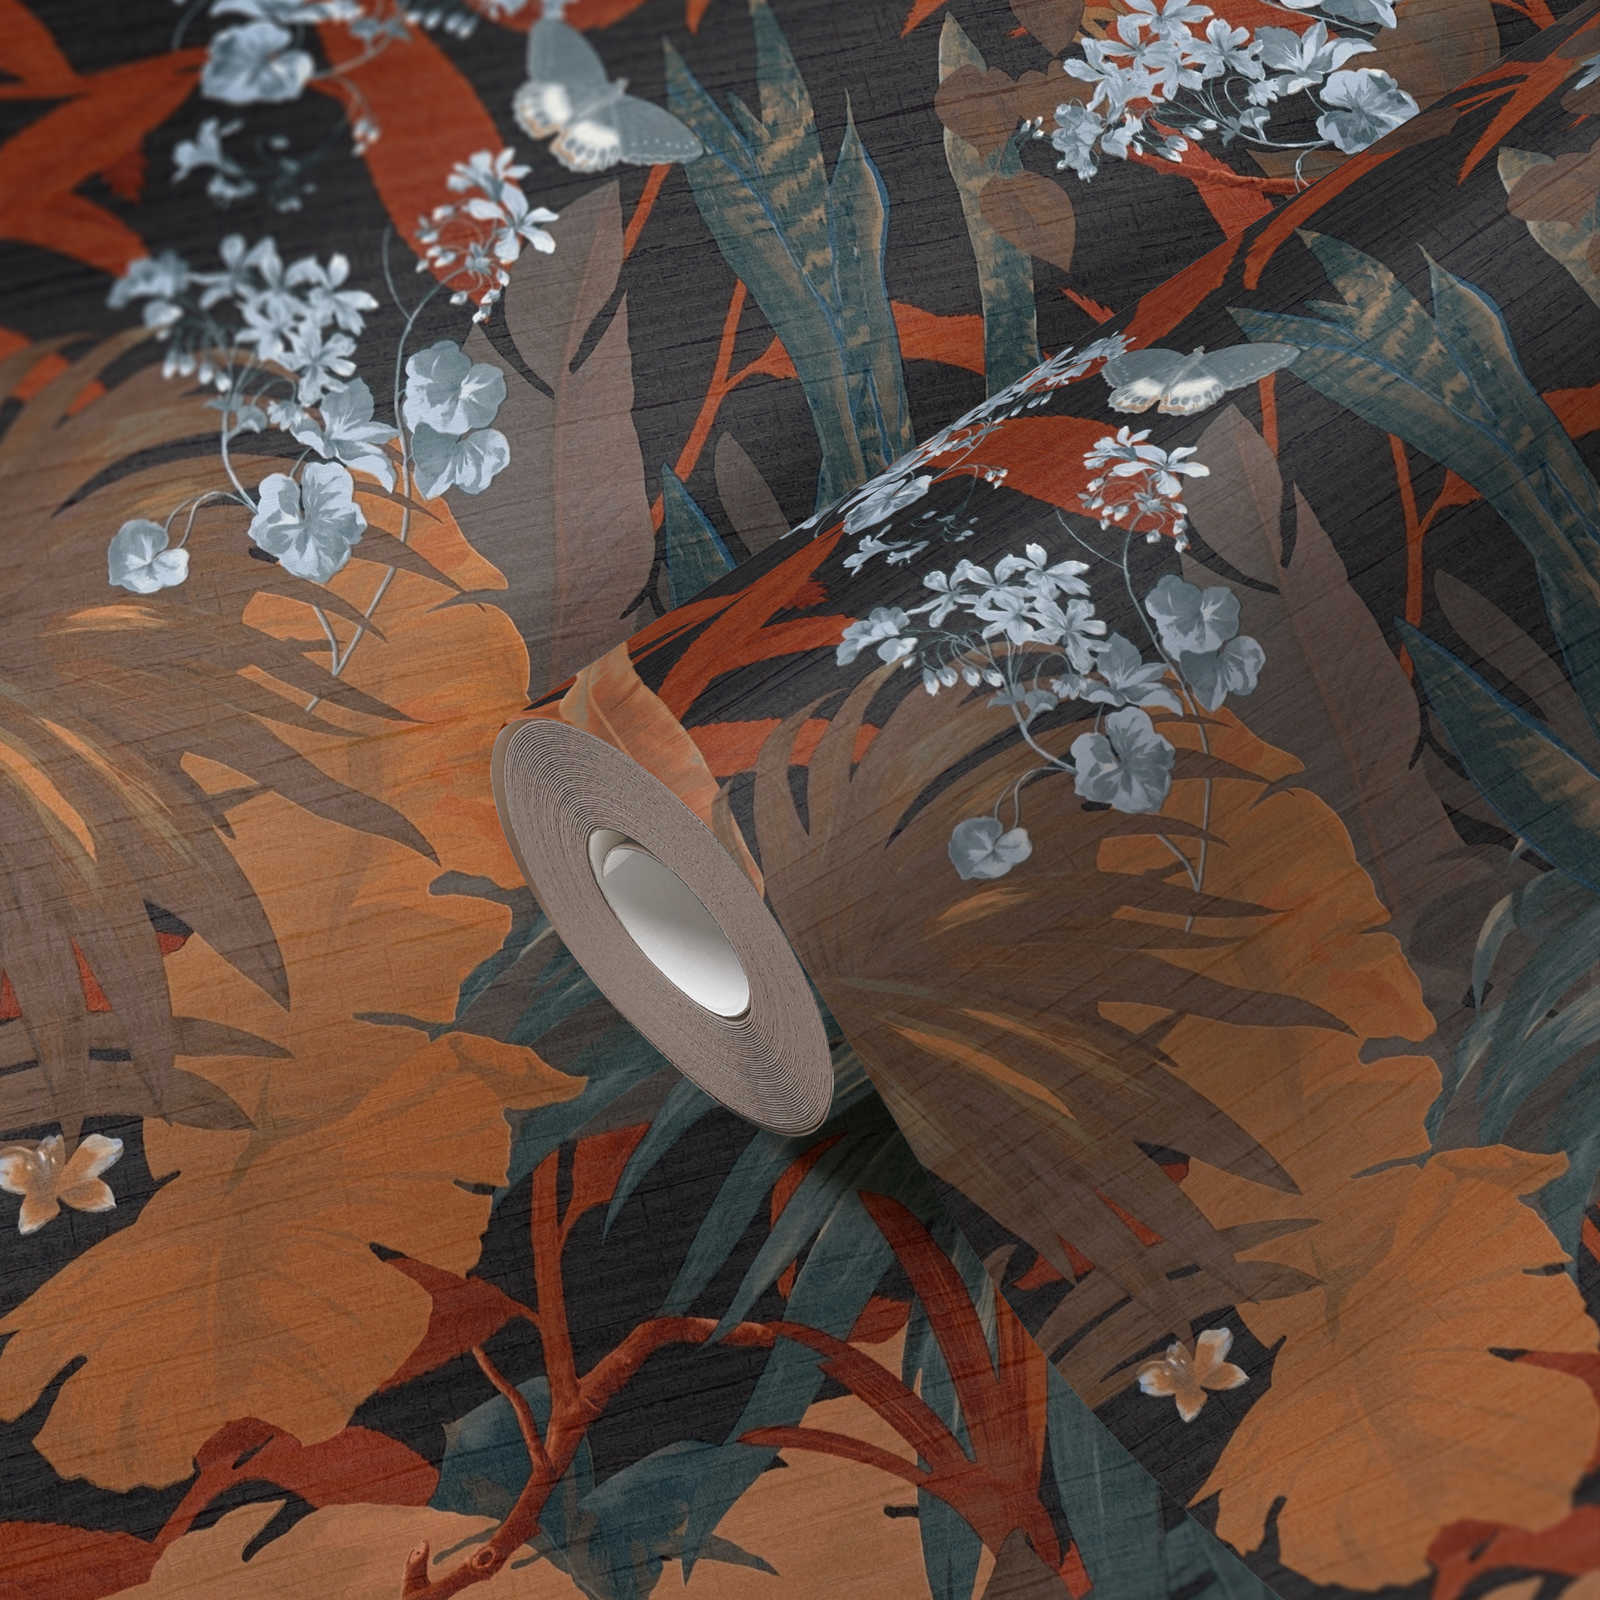             Papier peint jungle avec motif de feuilles - orange, bleu
        